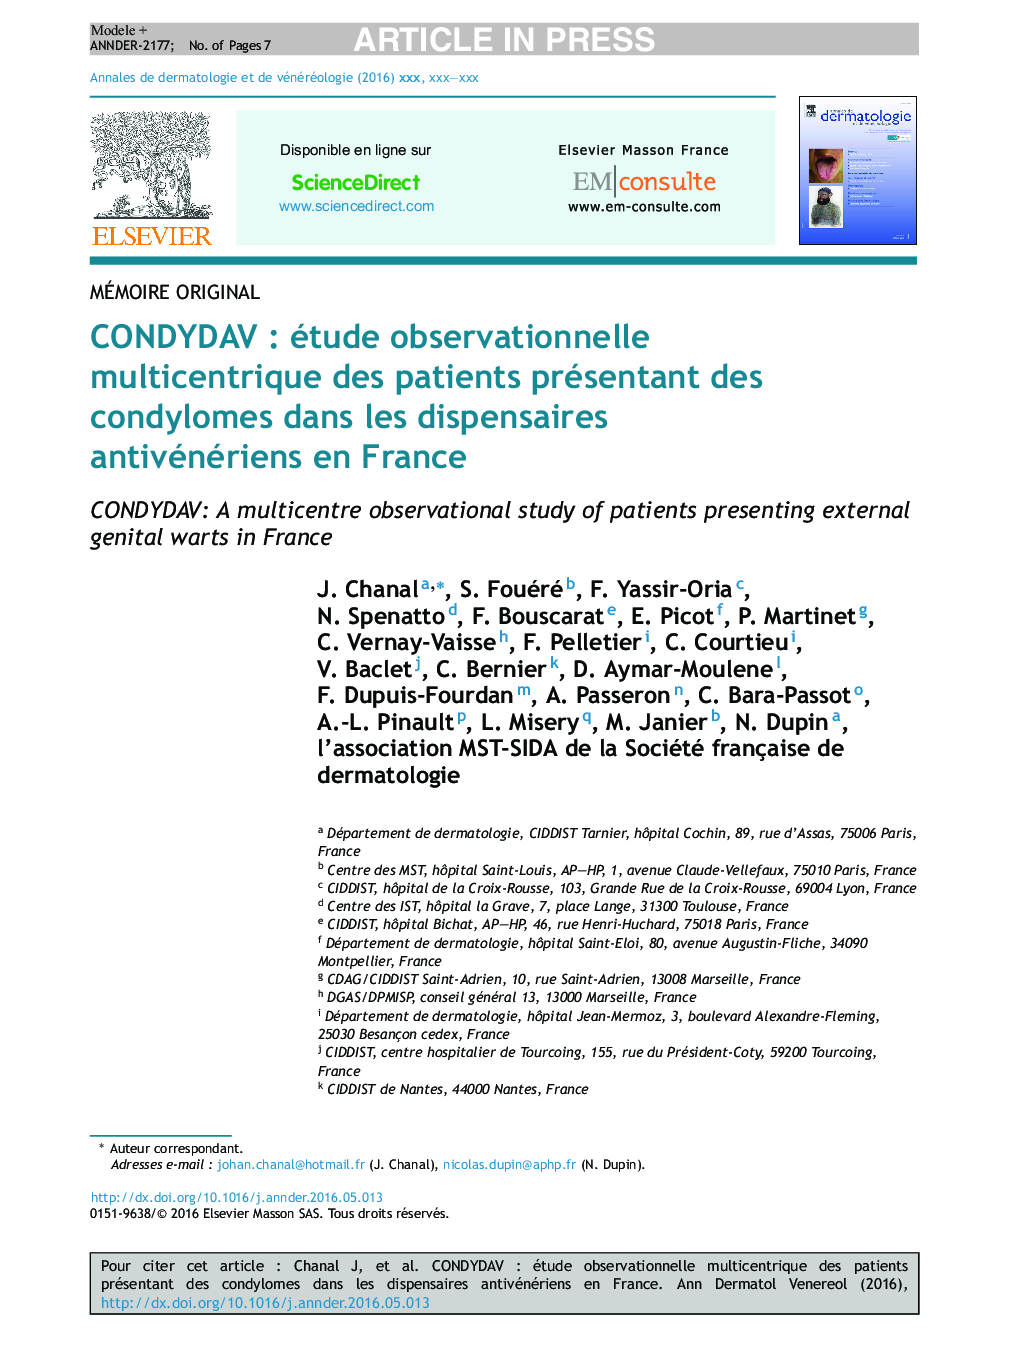 CONDYDAVÂ : étude observationnelle multicentrique des patients présentant des condylomes dans les dispensaires antivénériens en France